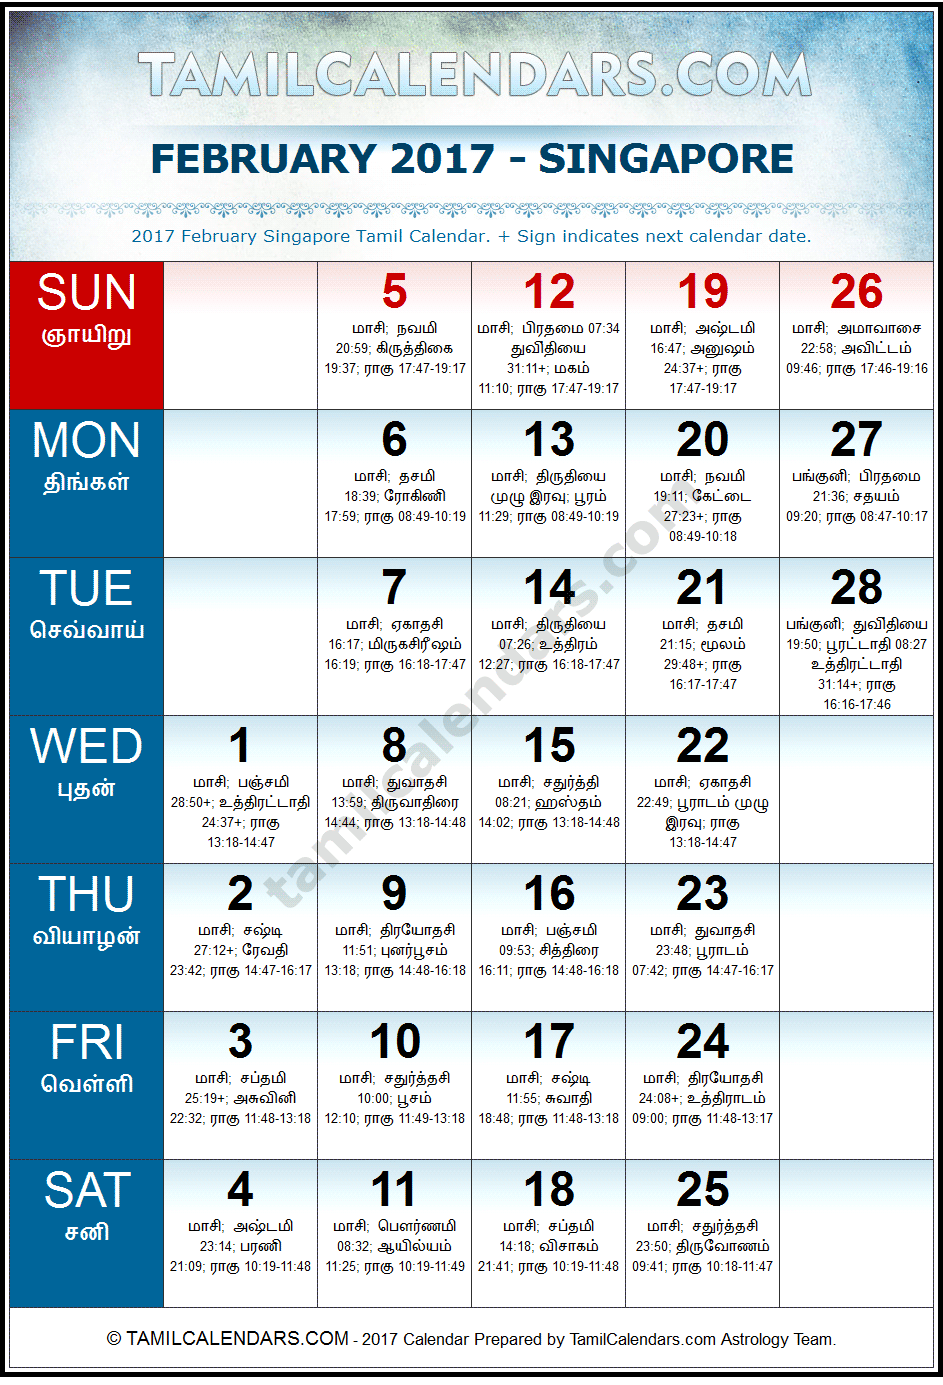 February 2017 Tamil Calendar for Singapore